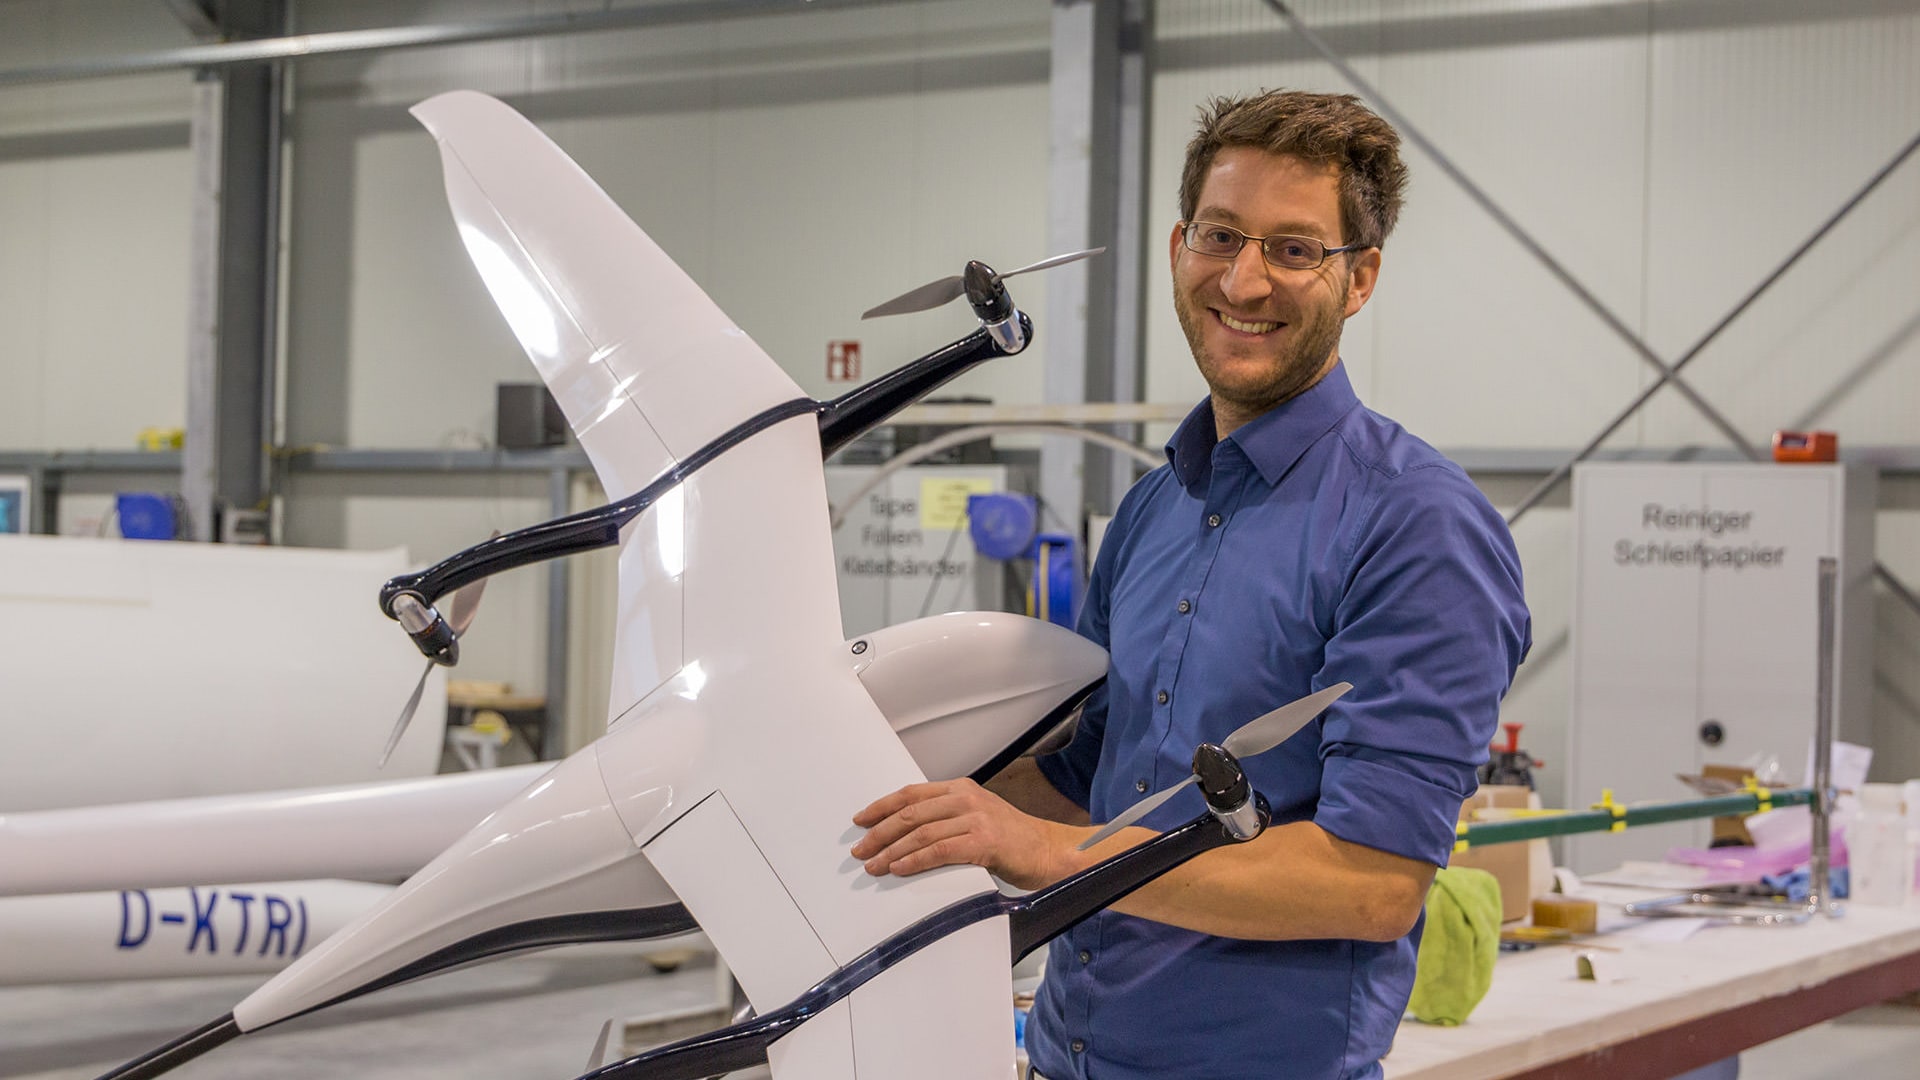 Immo Weidner mit seiner Qlex Drohne